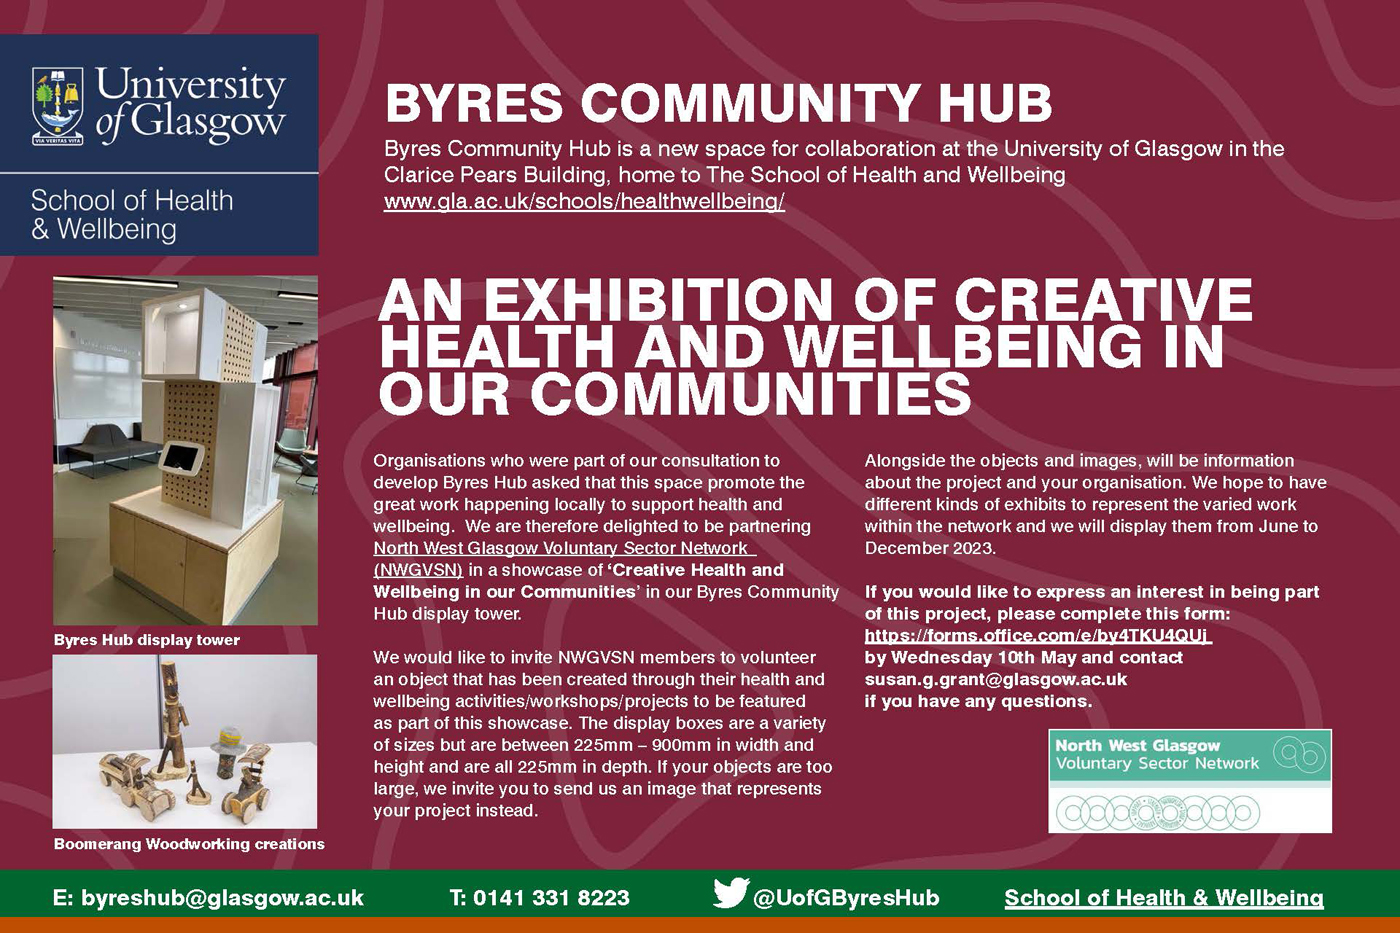 Flyer advertising the Byres Community Hub at University of Glasgow